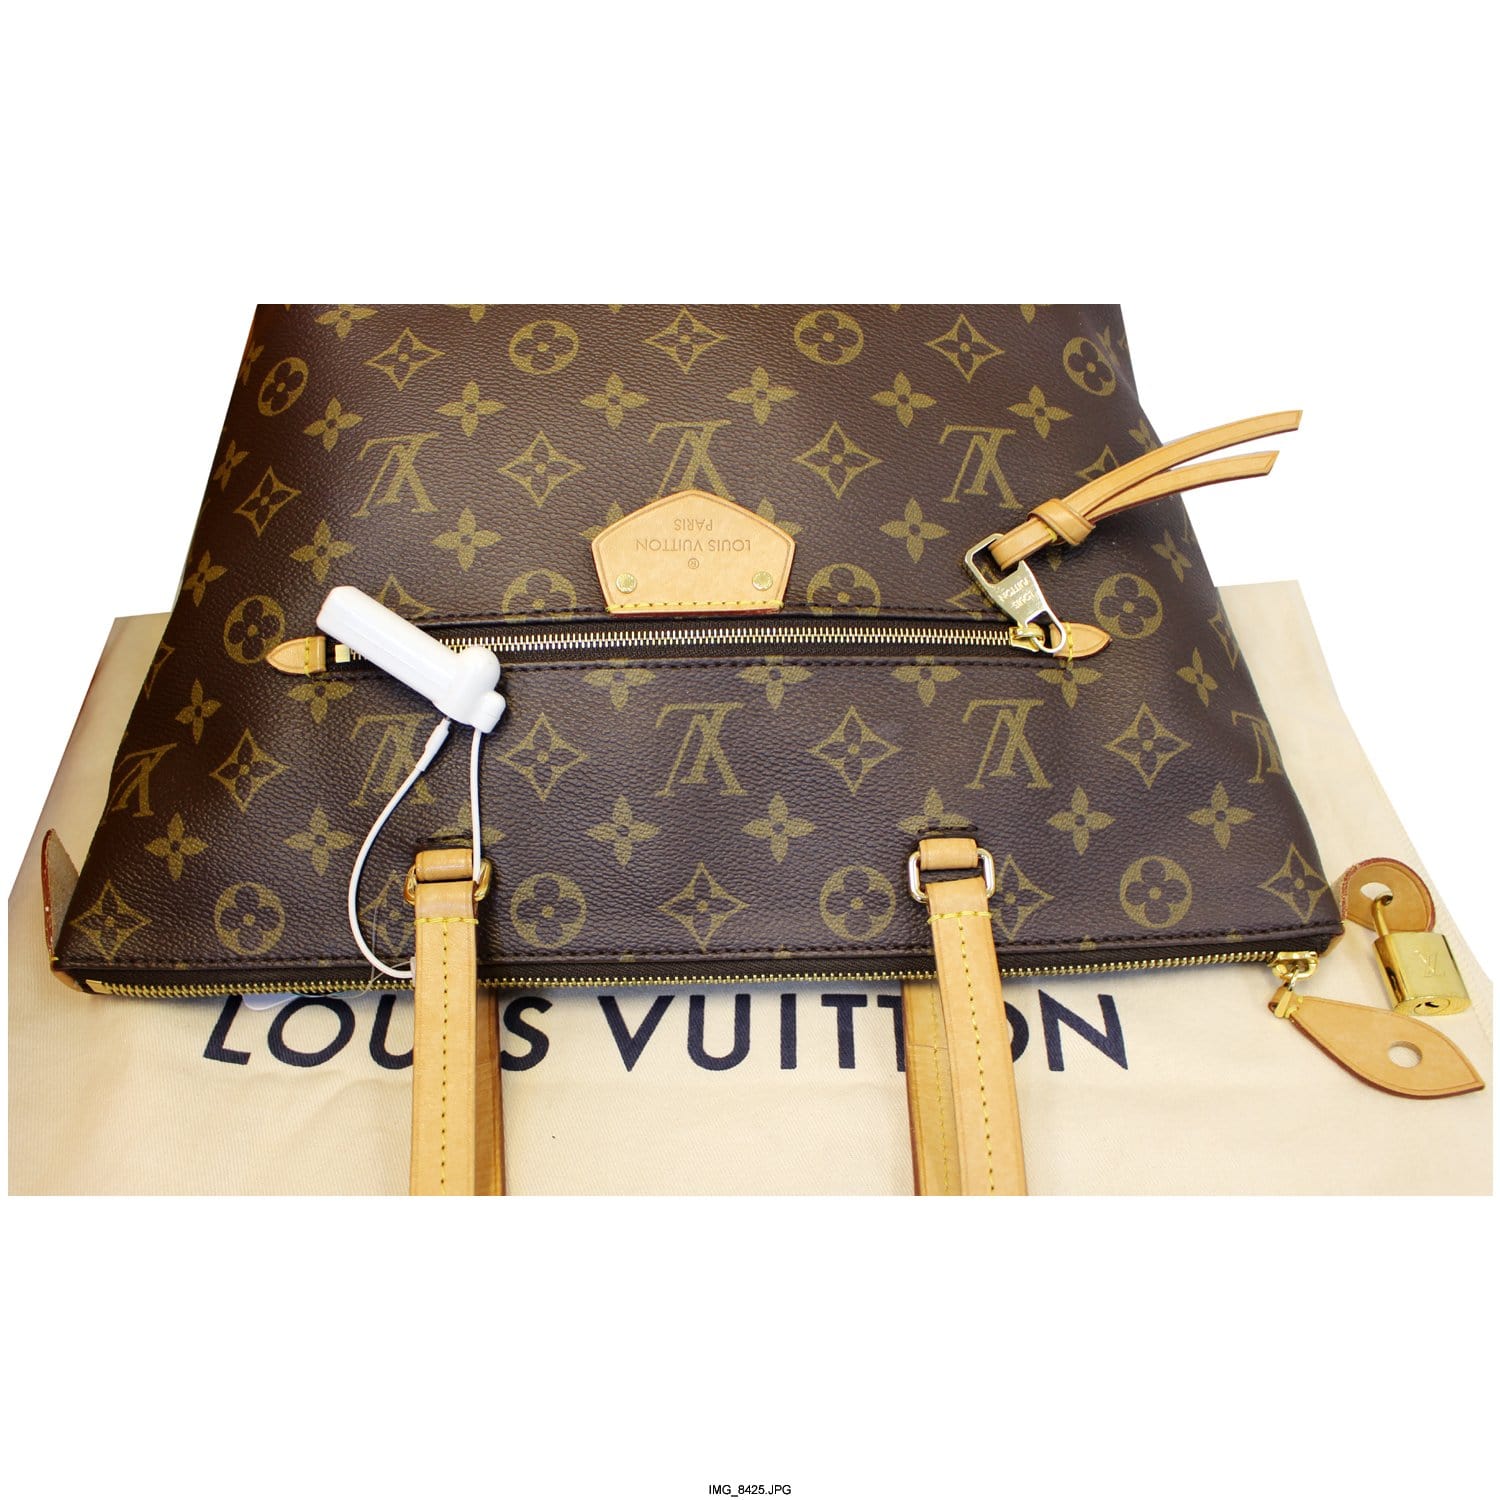 Louis Vuitton Iena MM Tote Bag - Farfetch